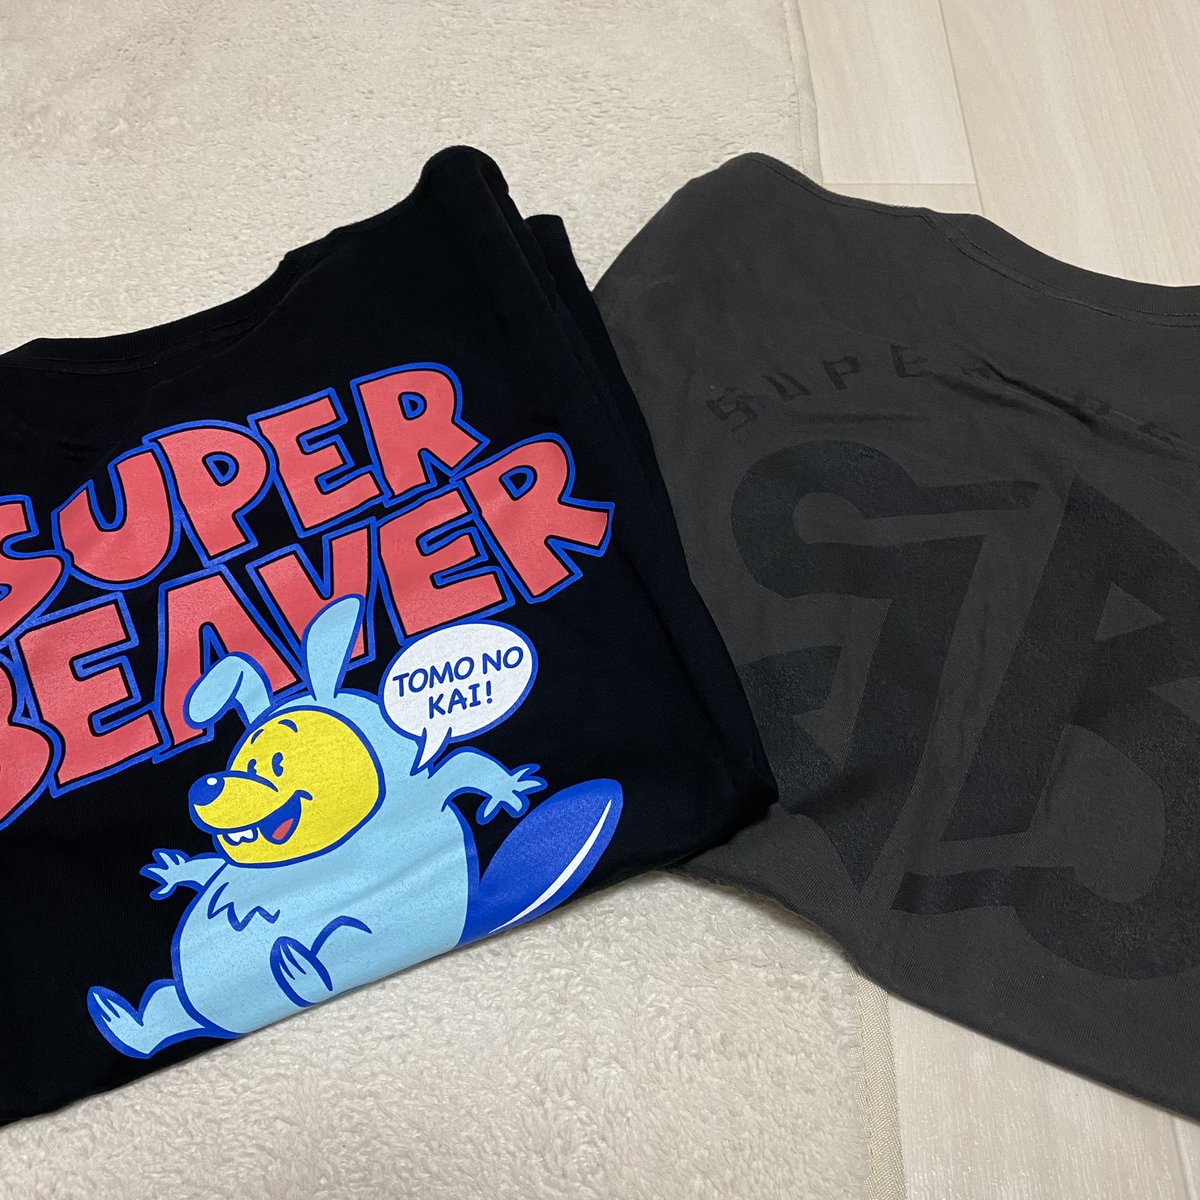 まだ一度も着とらんよ🌝
明日着るか？🌚
#SUPERBEAVER 
#SUPERBEAVER好きな人と繋がりたい